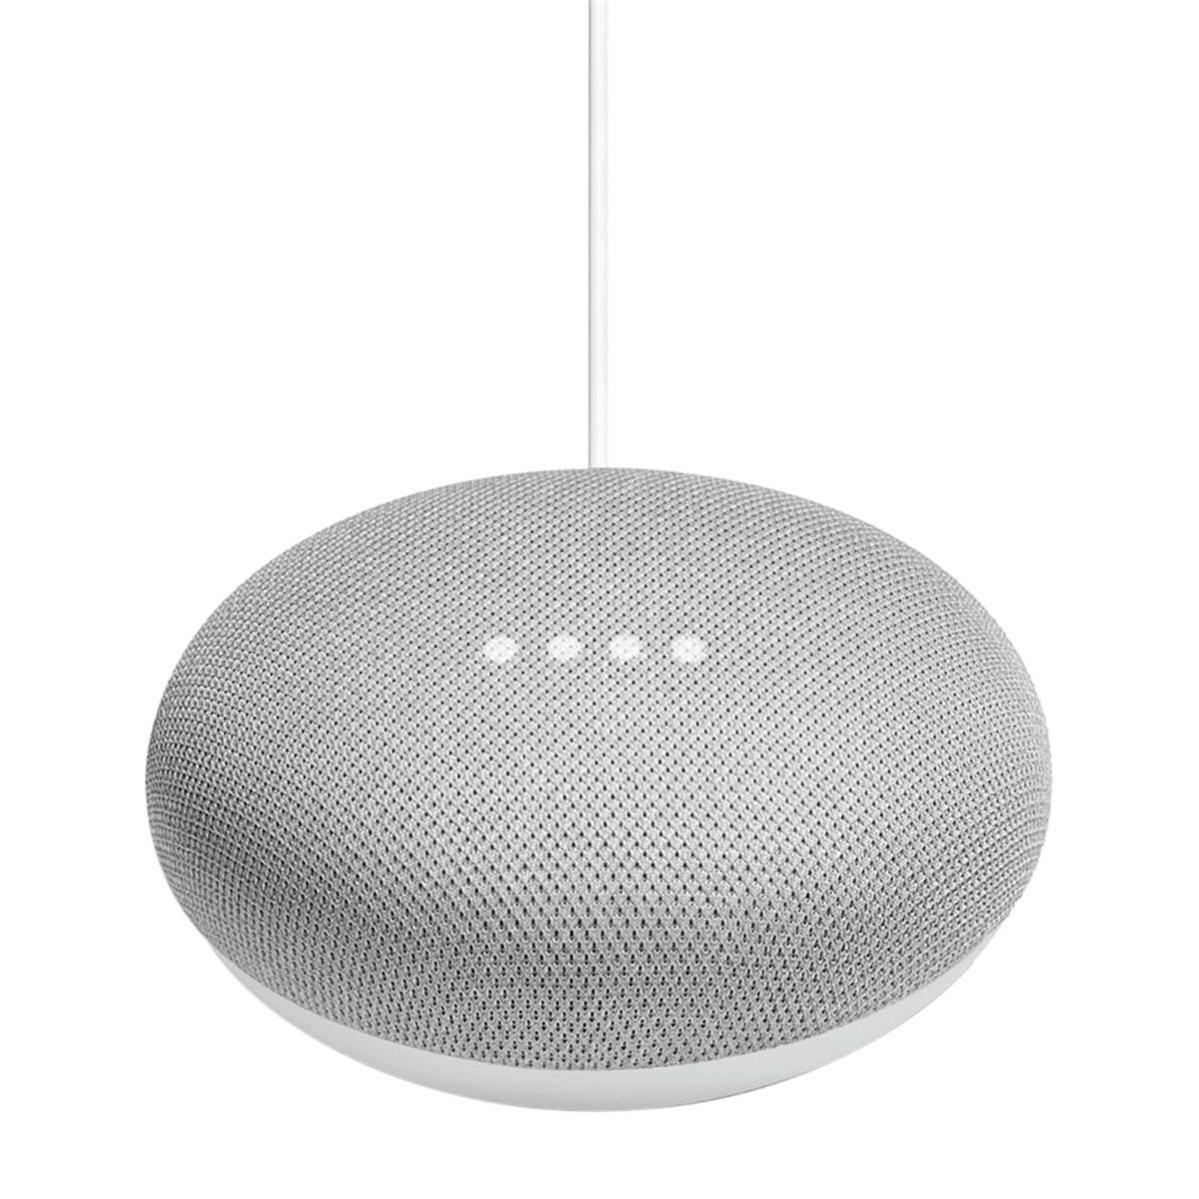 Google Home, presentato il nuovo assistente vocale per la casa